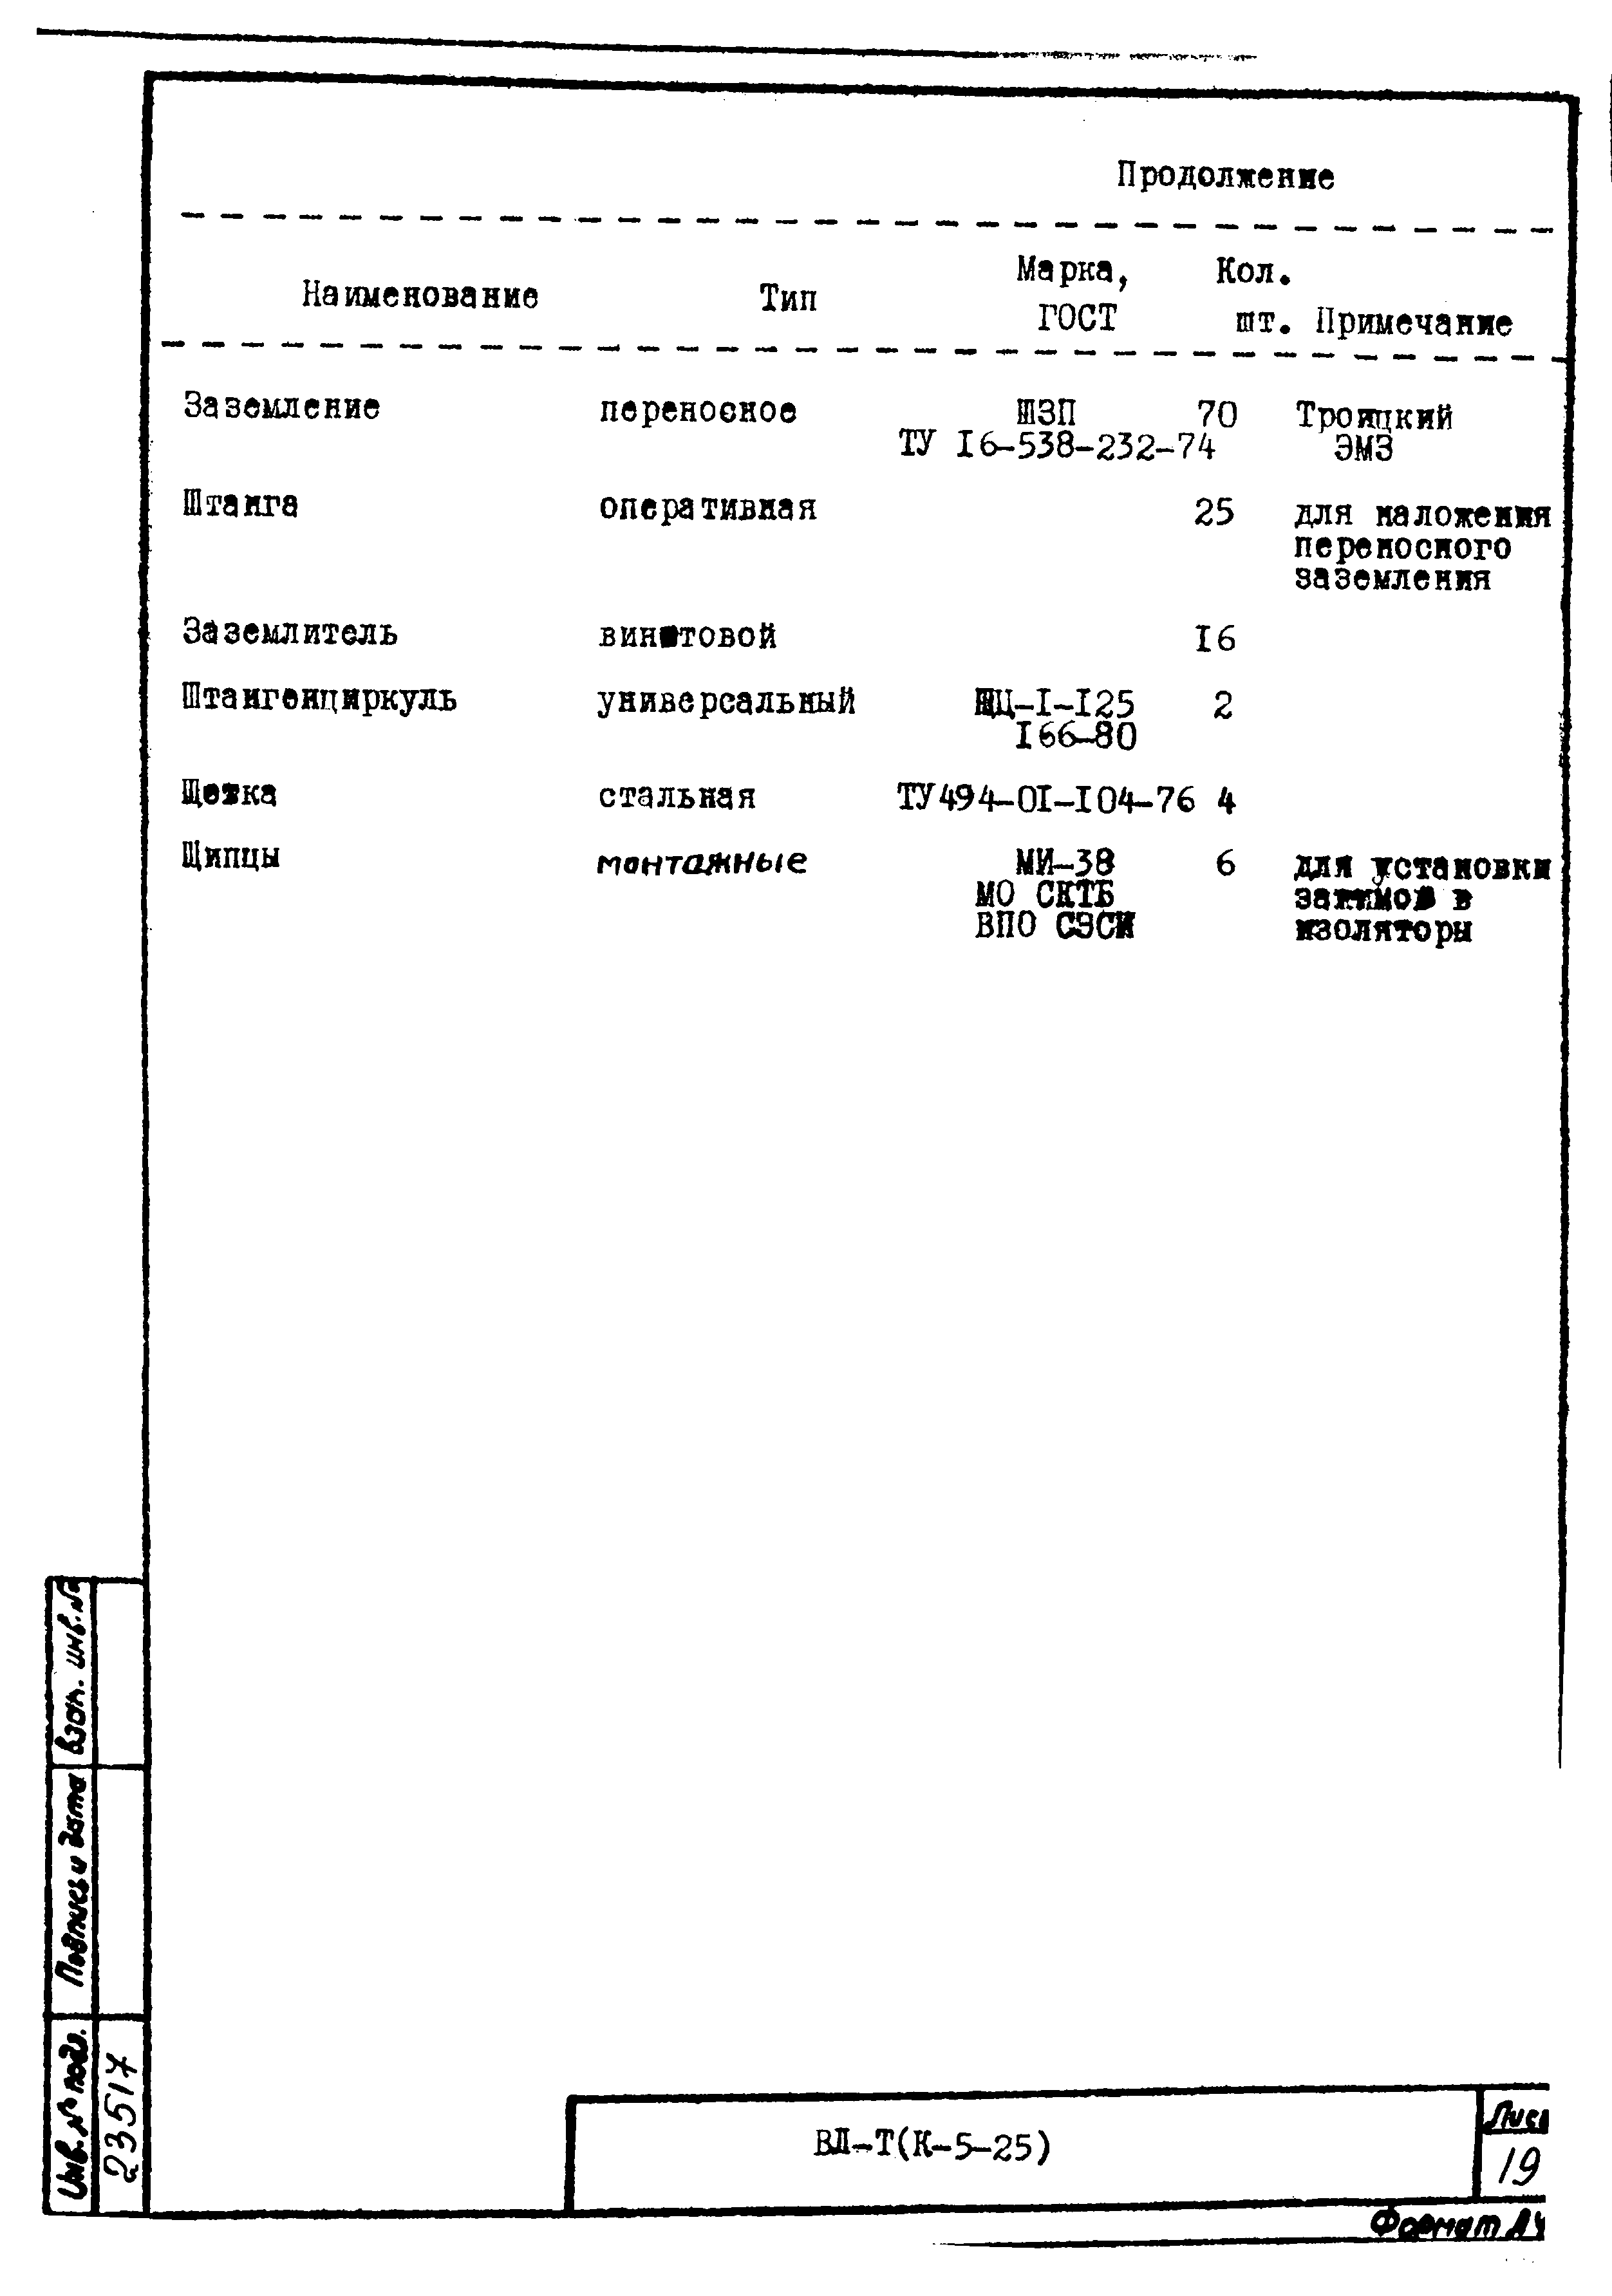 Технологическая карта К-5-25-5